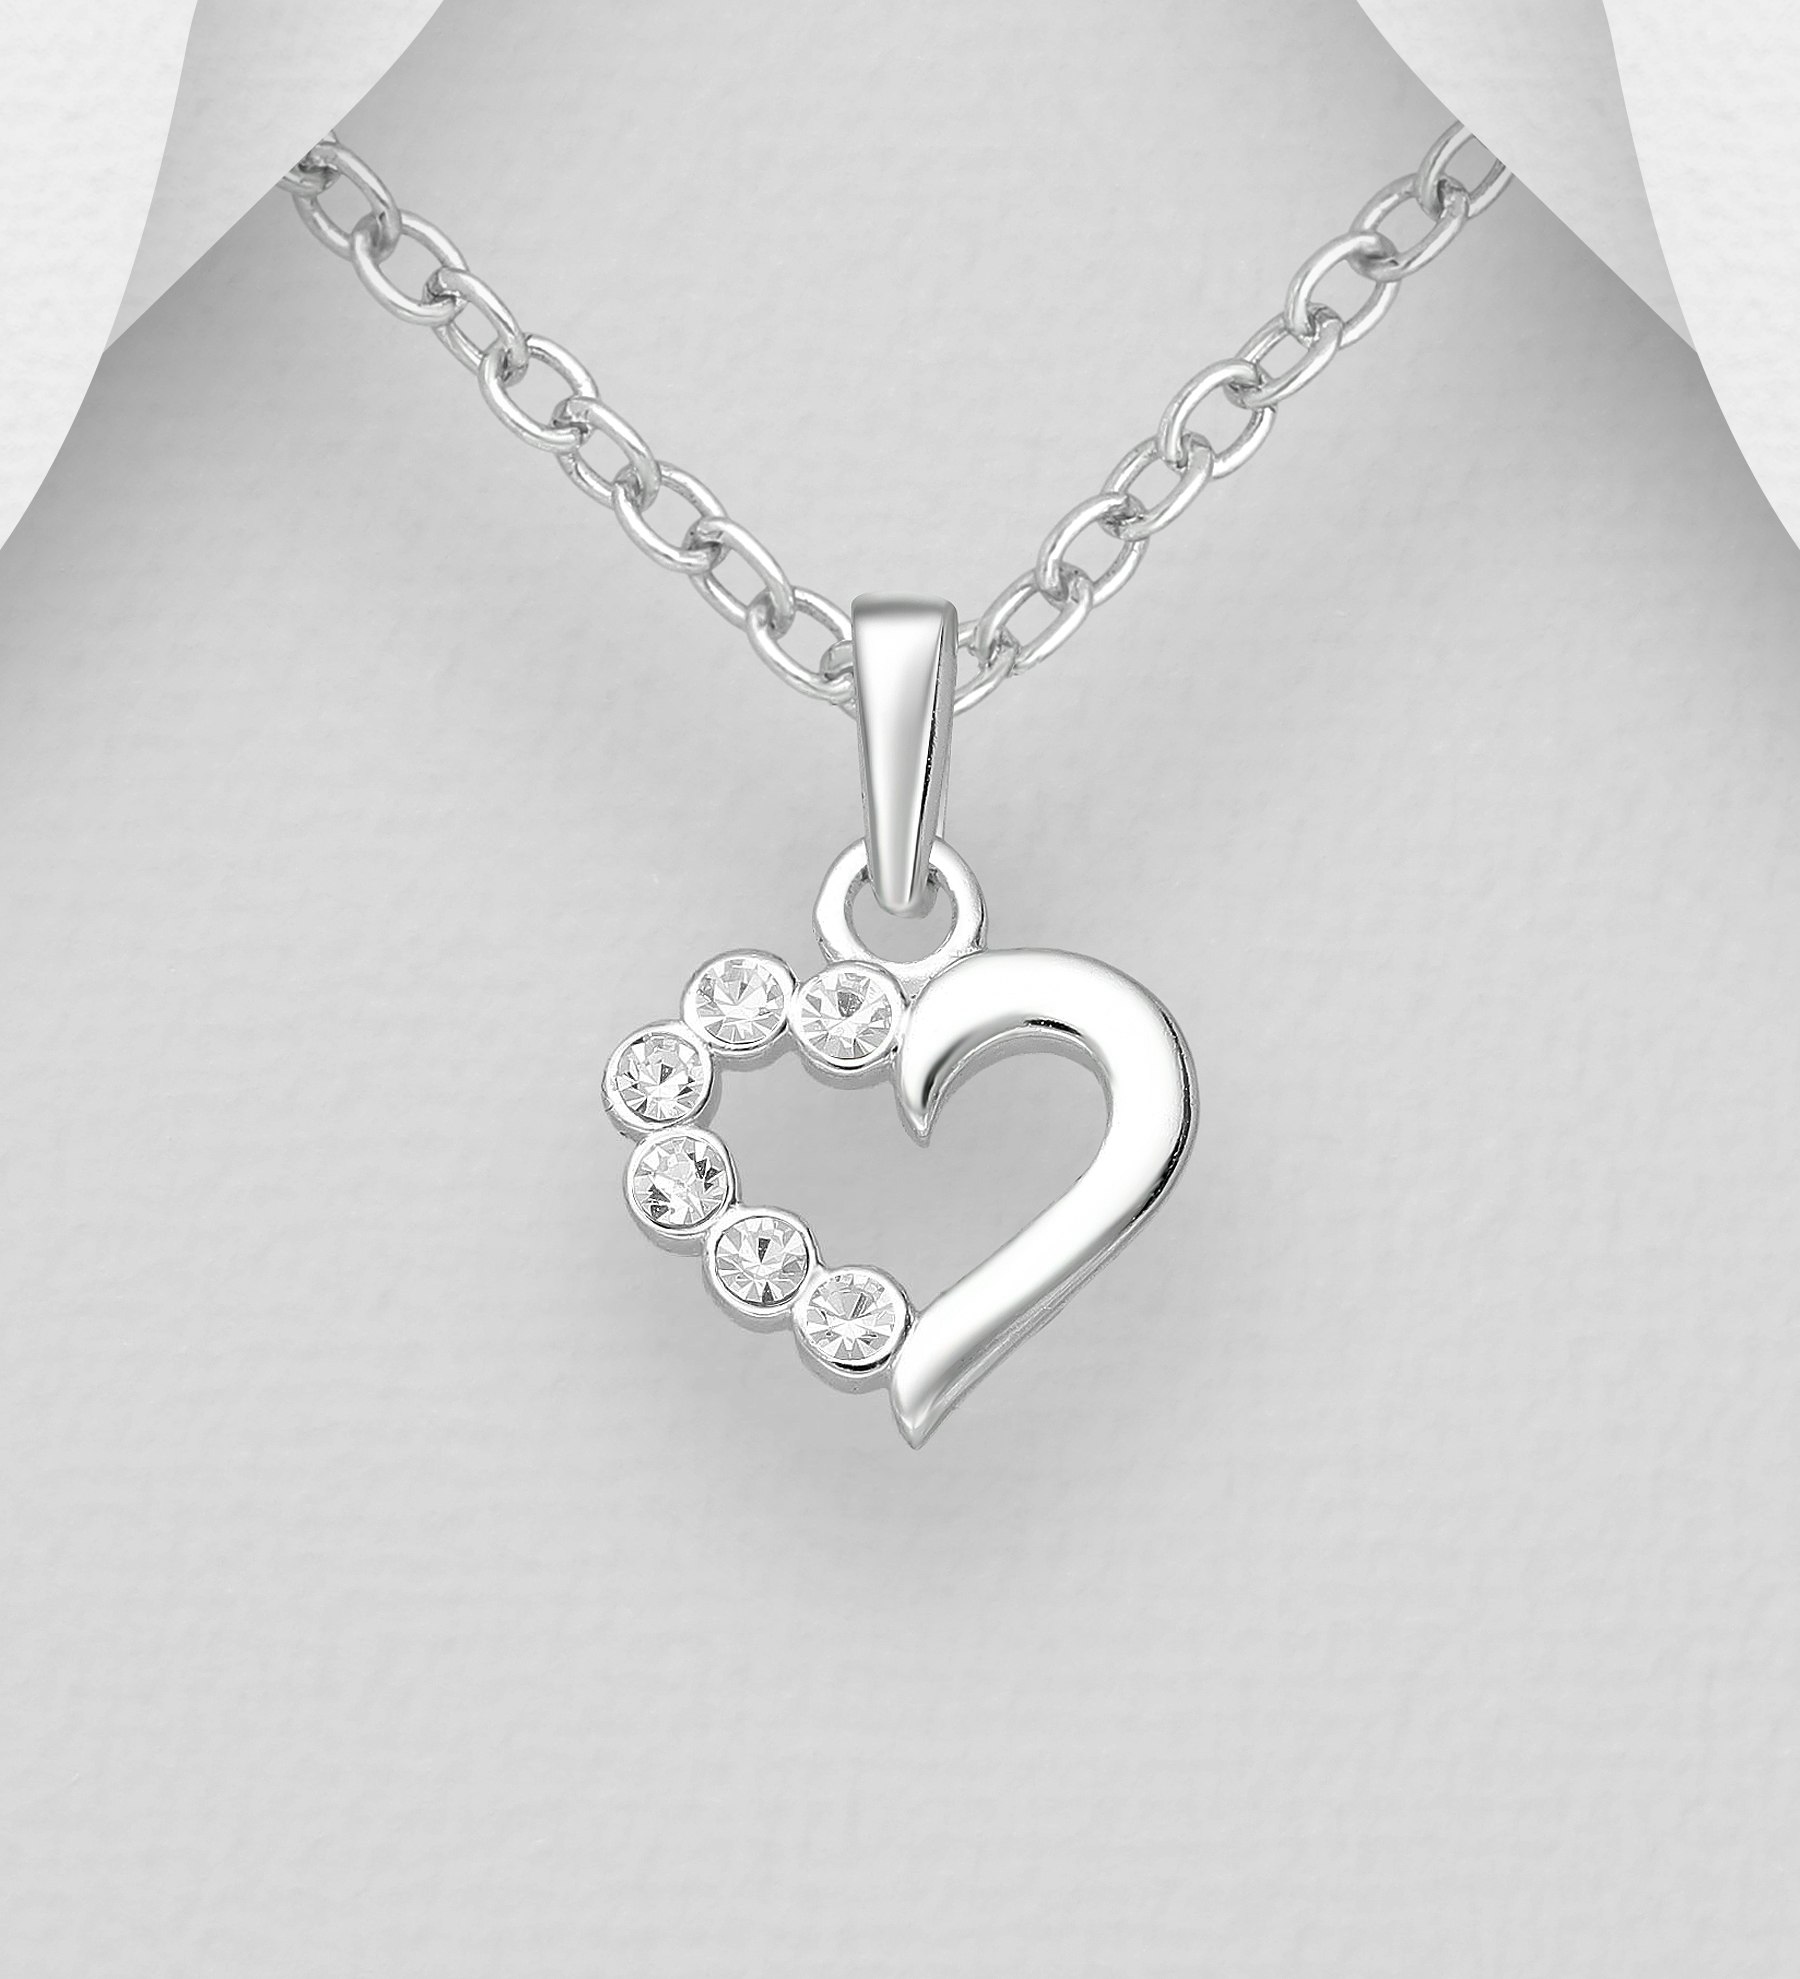 Barnhalsband Hjärta i silver med vita glittrande stenar - sött halsband till barn i äkta 925 sterling silver